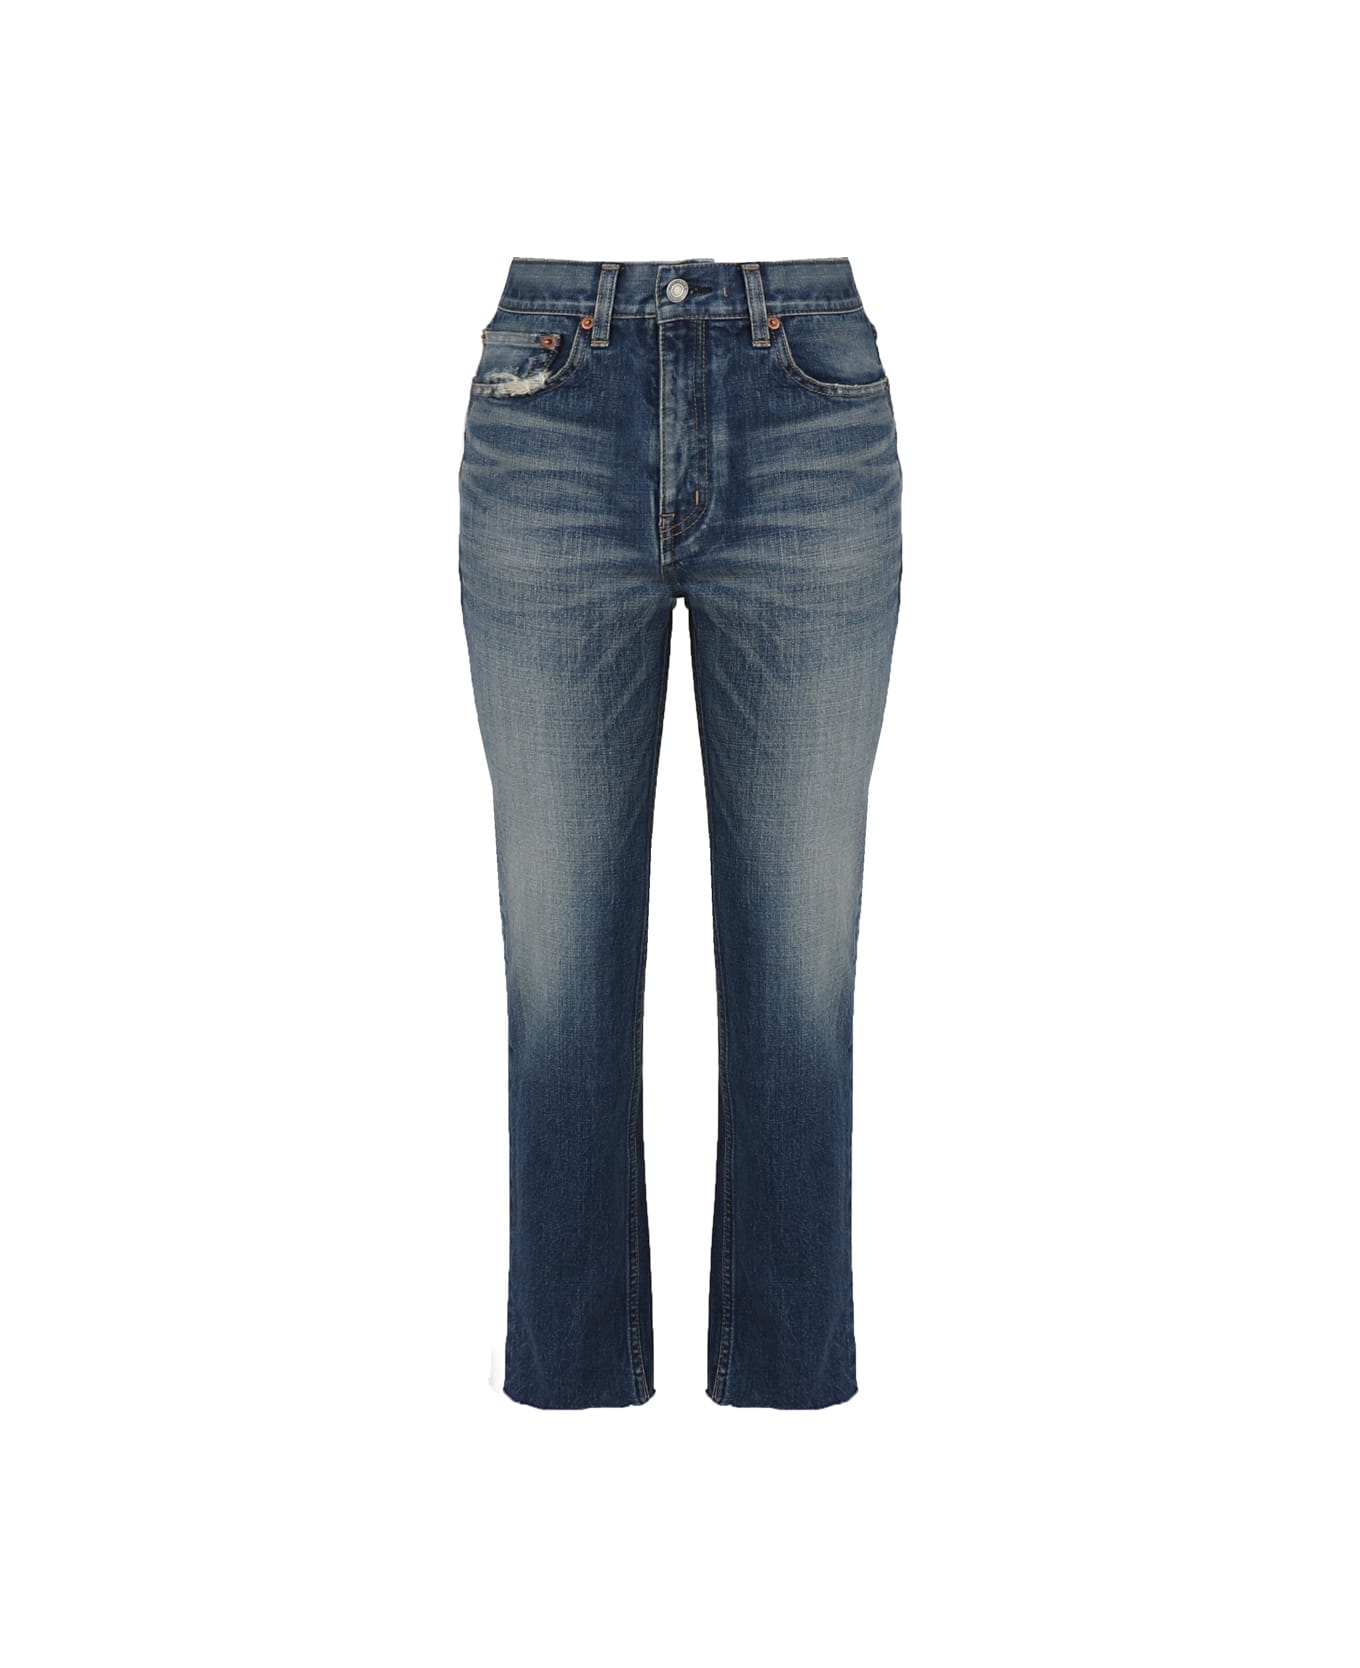 Saint Laurent Blue Denim Straight Leg Jeans - Authentic vintage bl